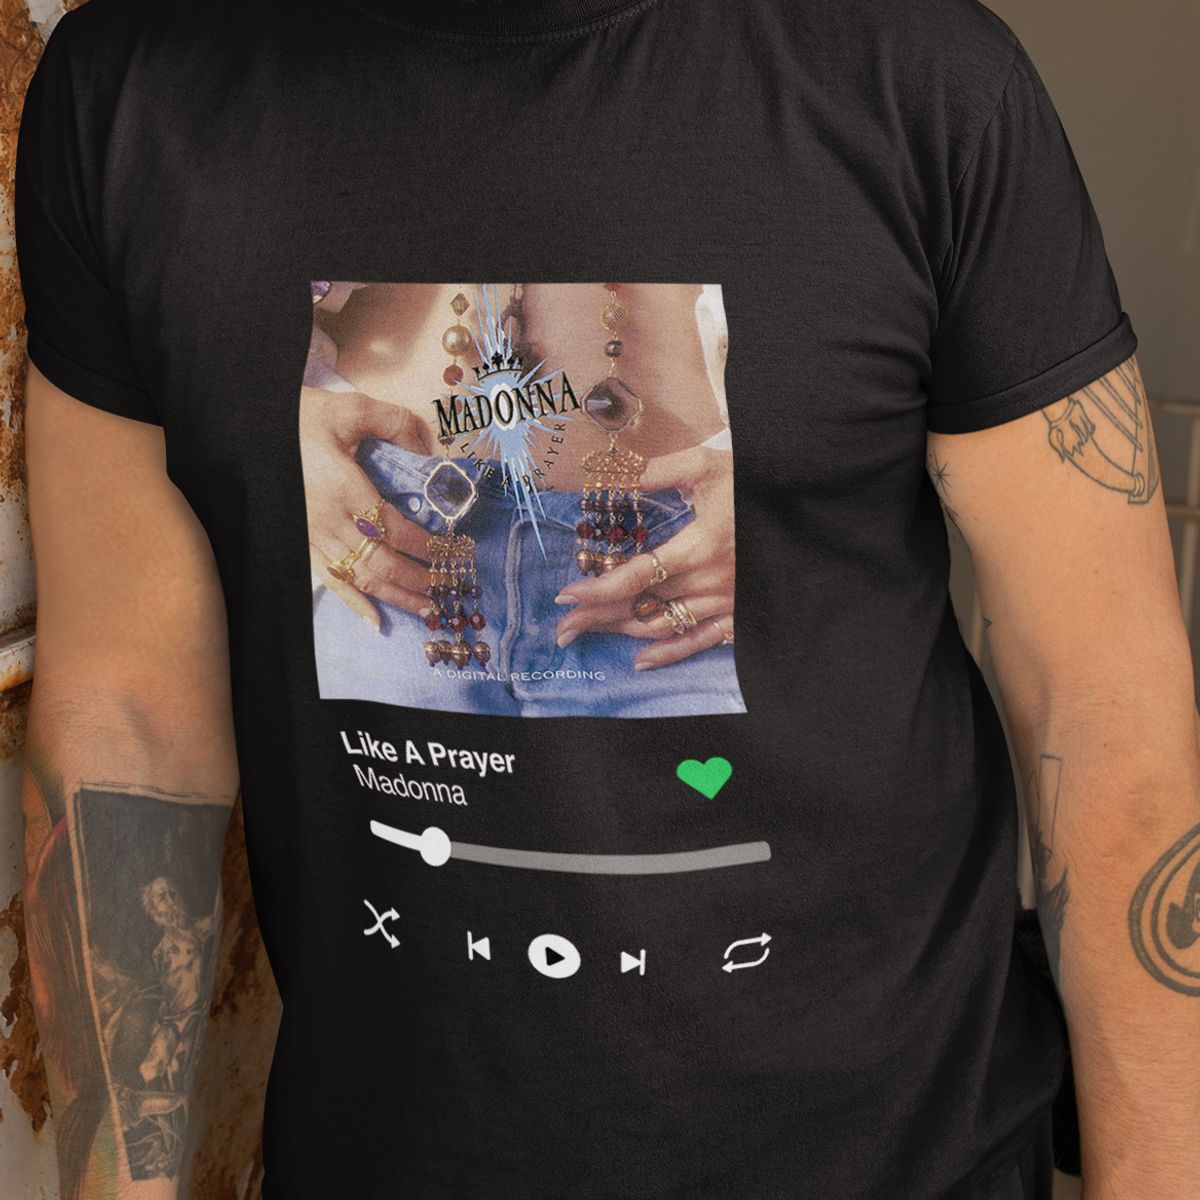 Nome do produto: Camiseta Ouvindo Madonna (Disco Like A Prayer)